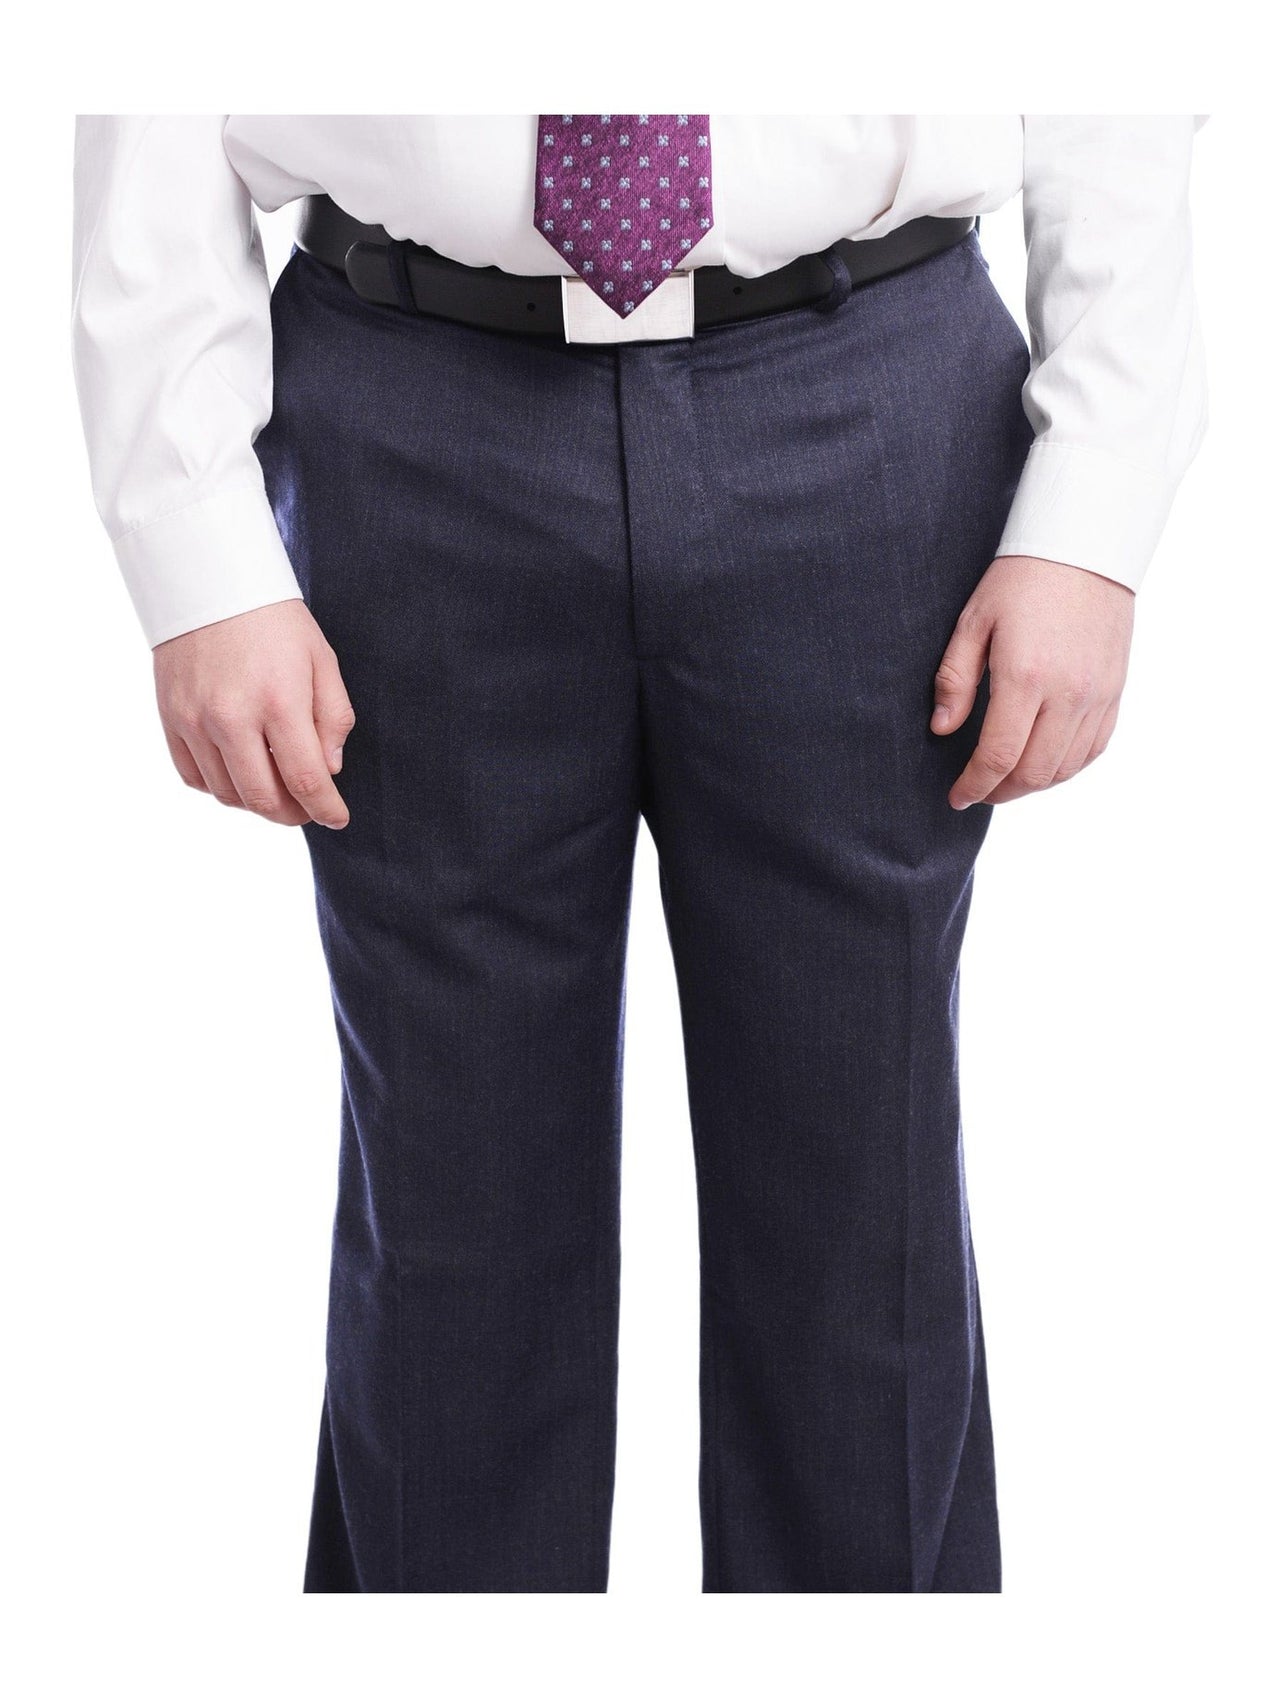 Arthur Black TWO PIECE SUITS Men's Arthur Black Executive Portly Fit Solid Blue Two Button 2 Piece Wool Suit